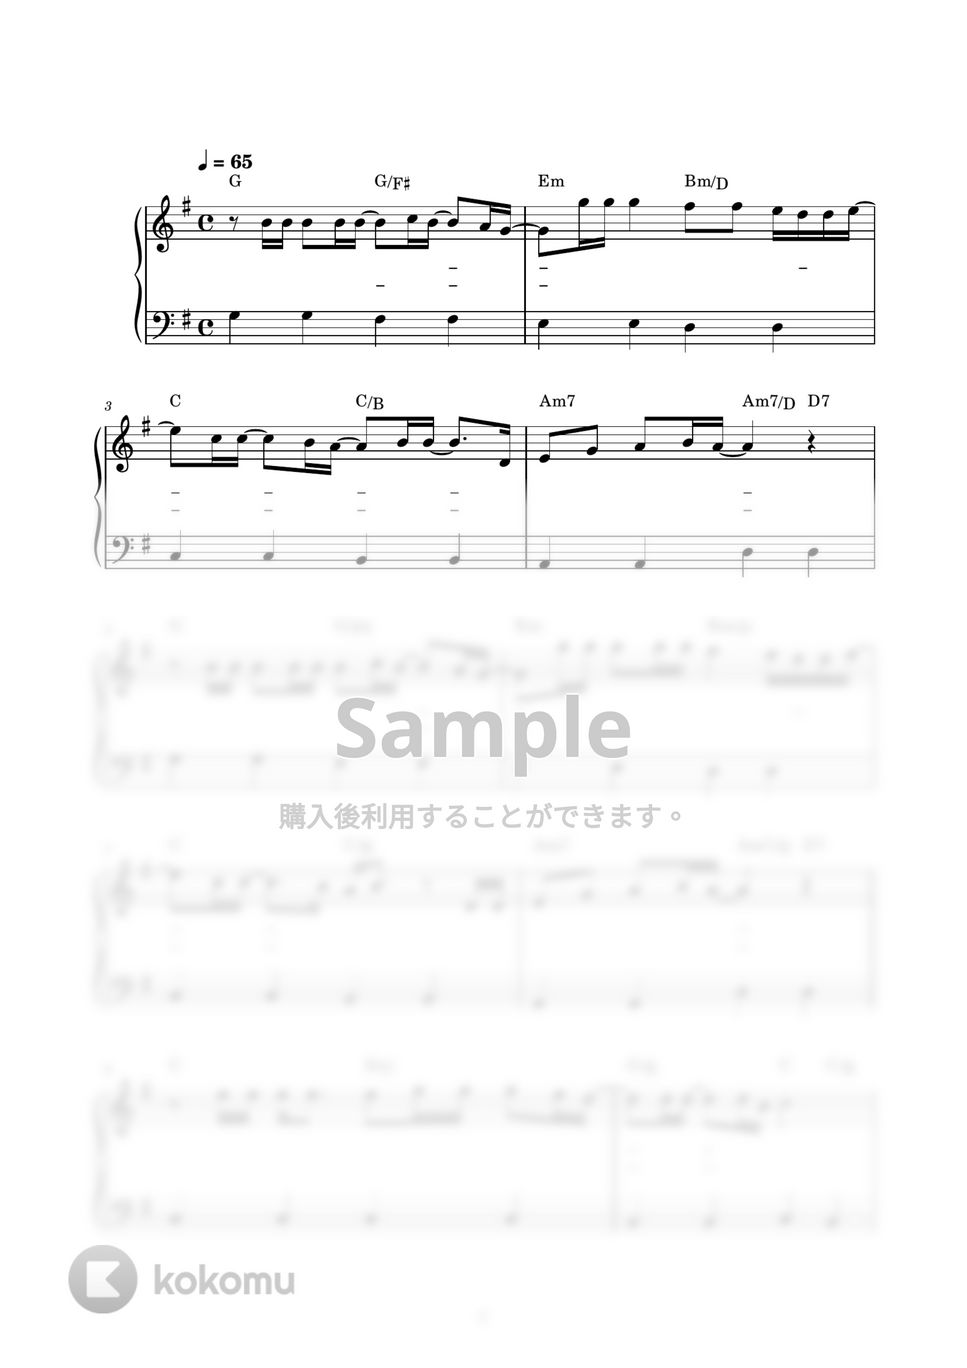 チューリップ - 青春の影 (ピアノ楽譜 / かんたん両手 / 歌詞付き / ドレミ付き / 初心者向き) by piano.tokyo